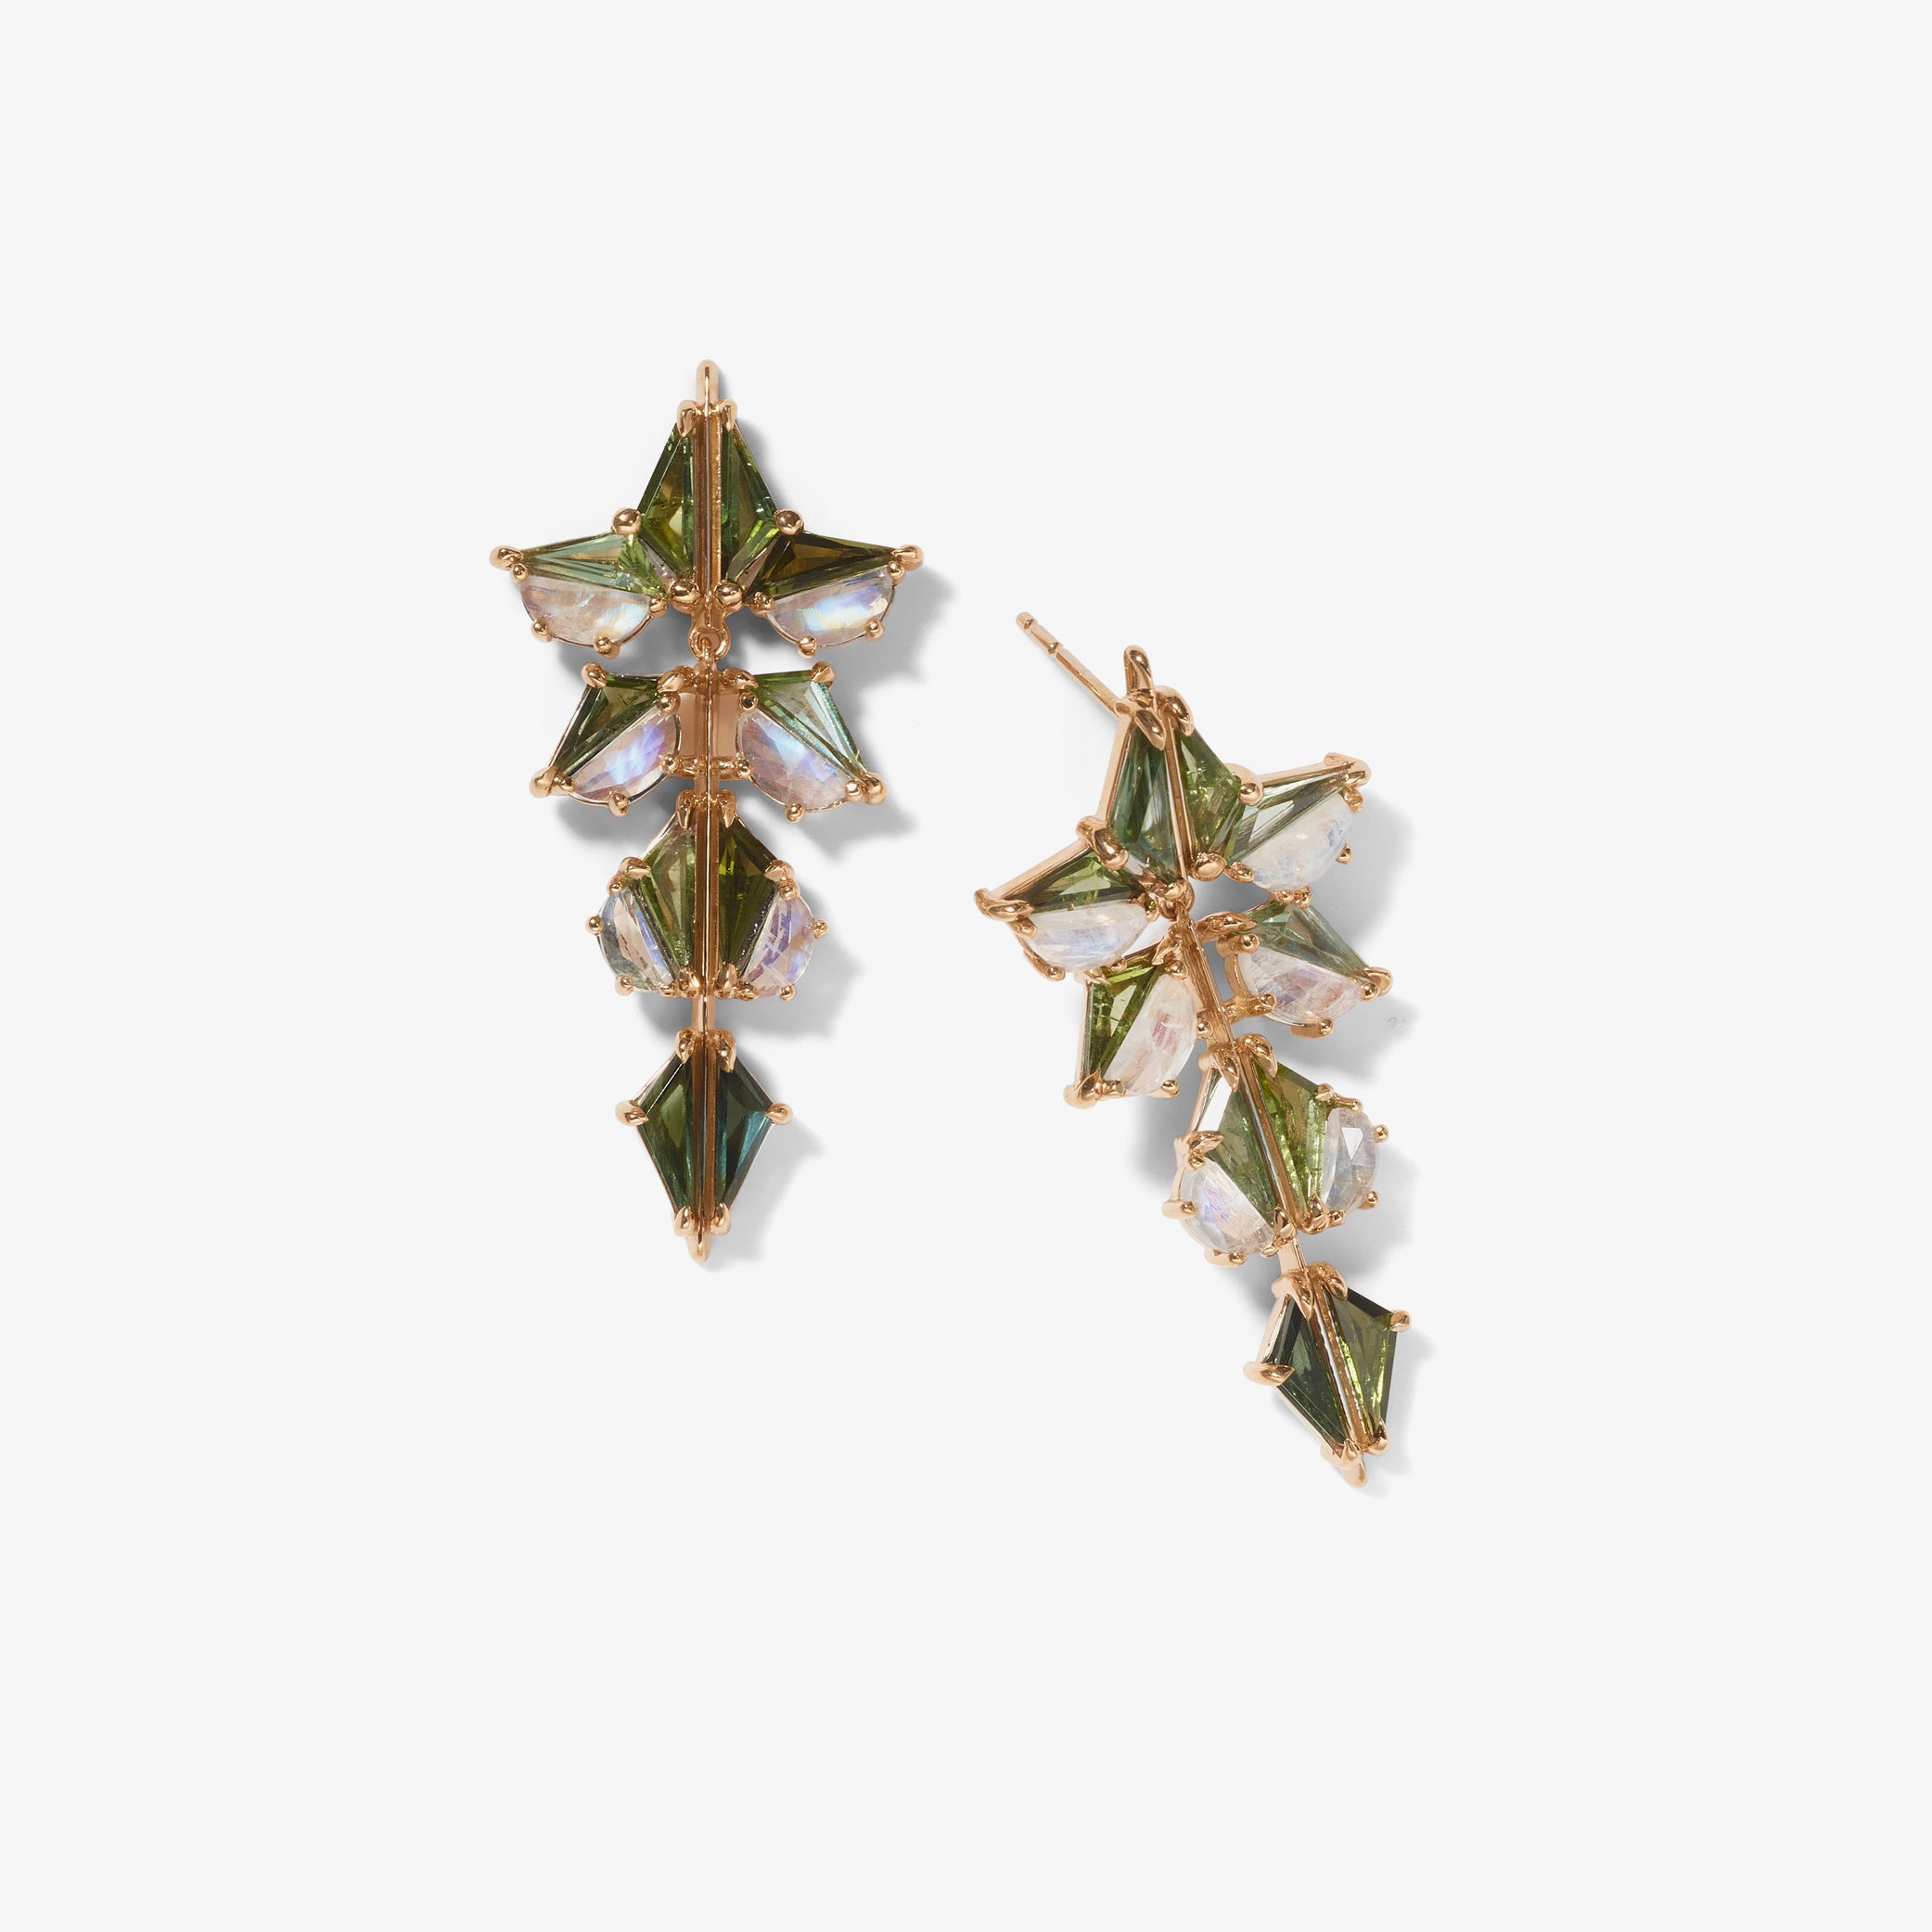 Shuriken Earrings - Green Tourmaline